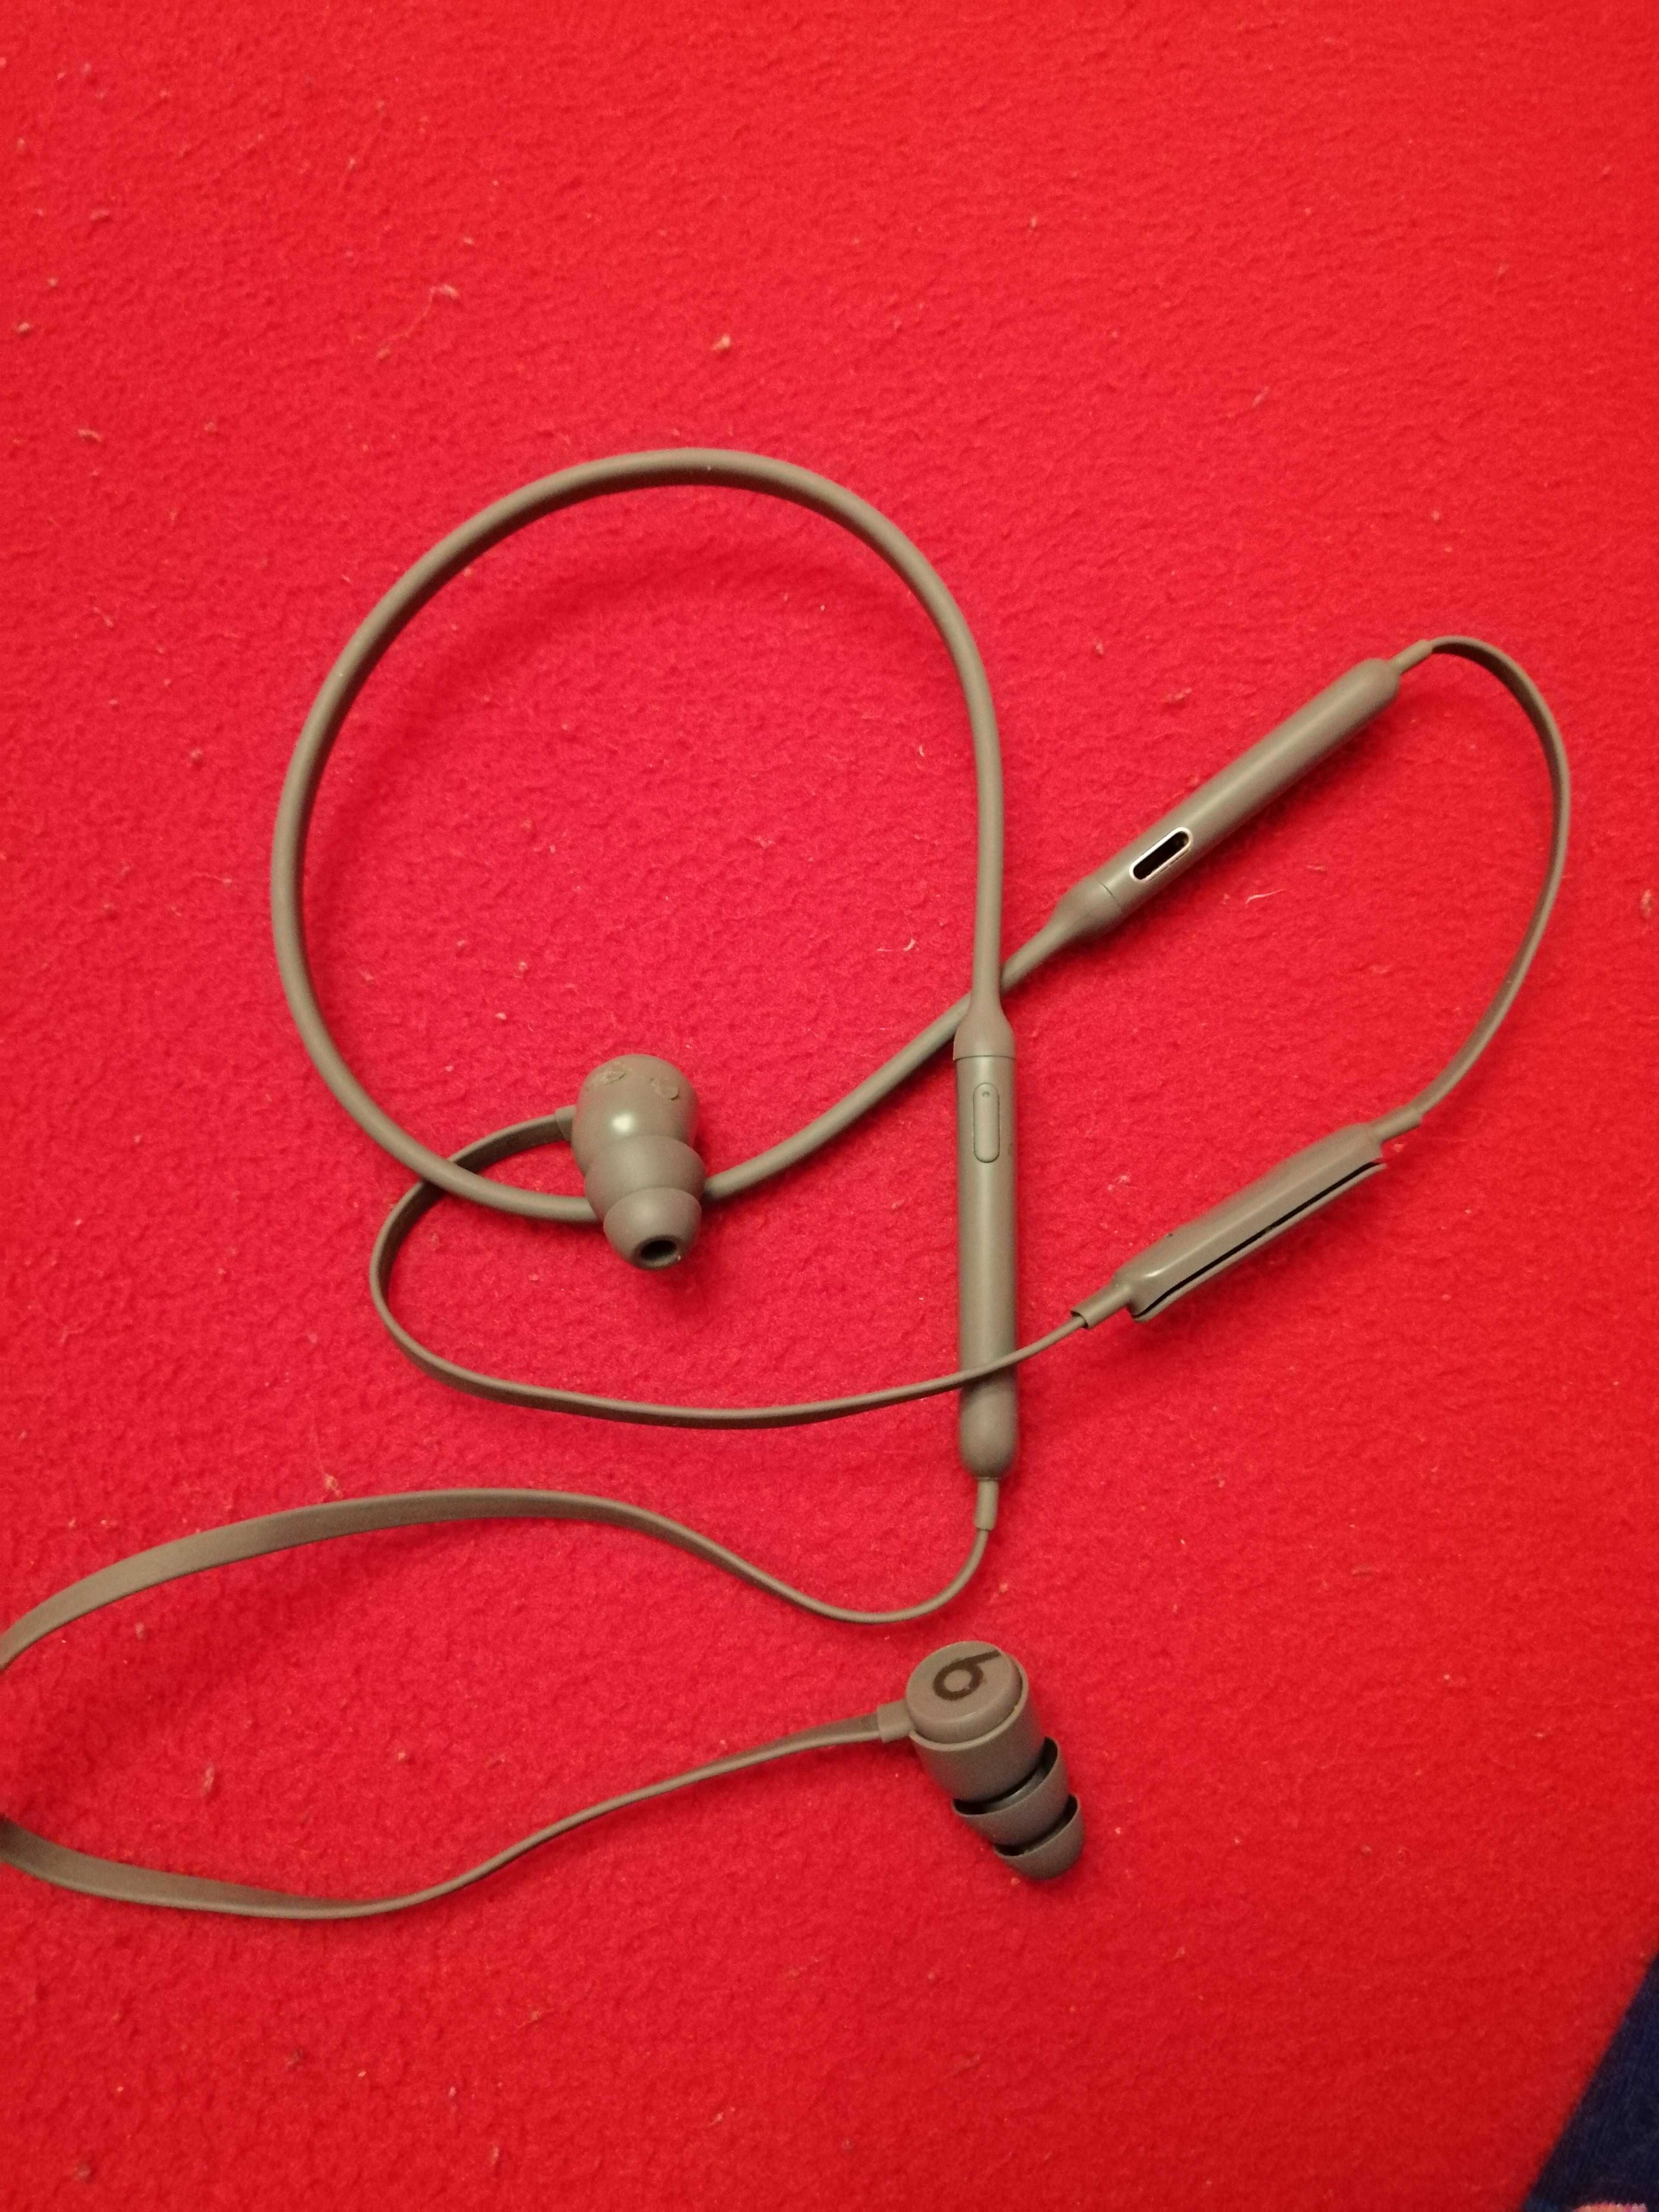 Аудио слушалки In-ear BeatsX by Dr. Dre, Wireless, Сиви